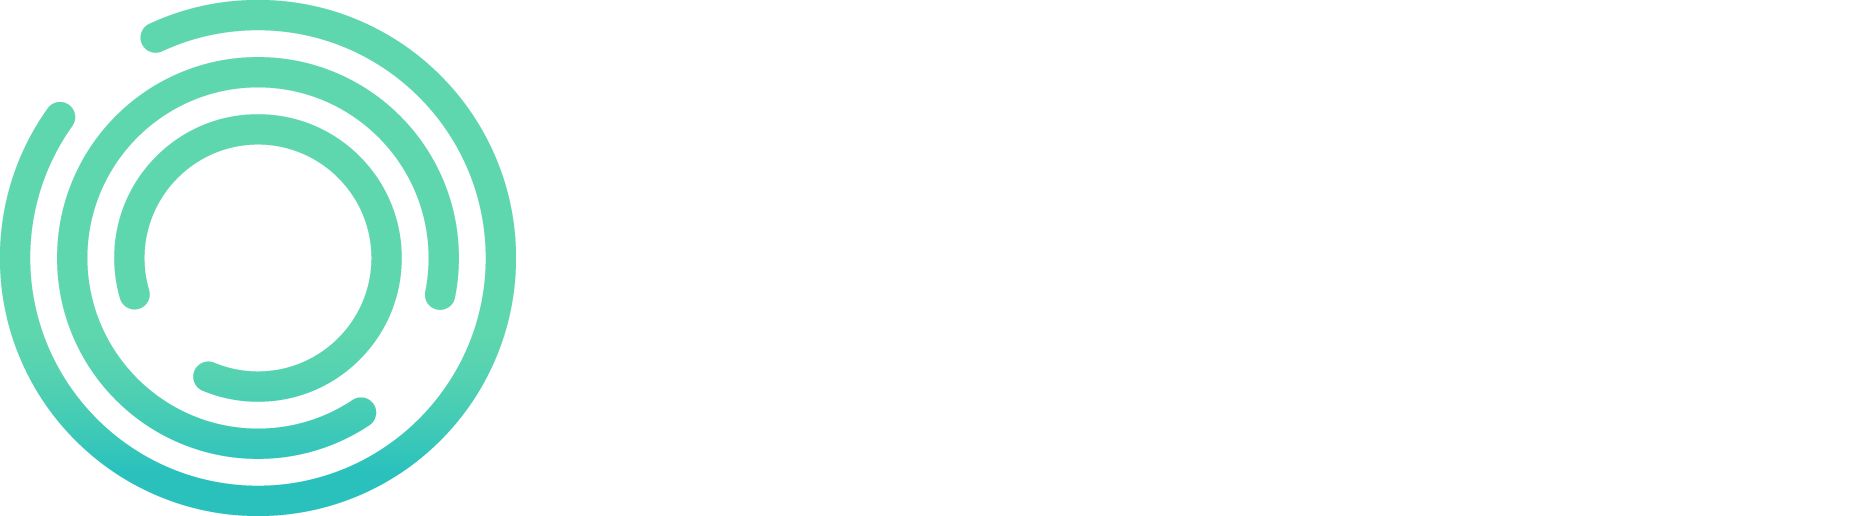 Bitcoin Bonanza - まだ Bitcoin Bonanza に参加していませんか?